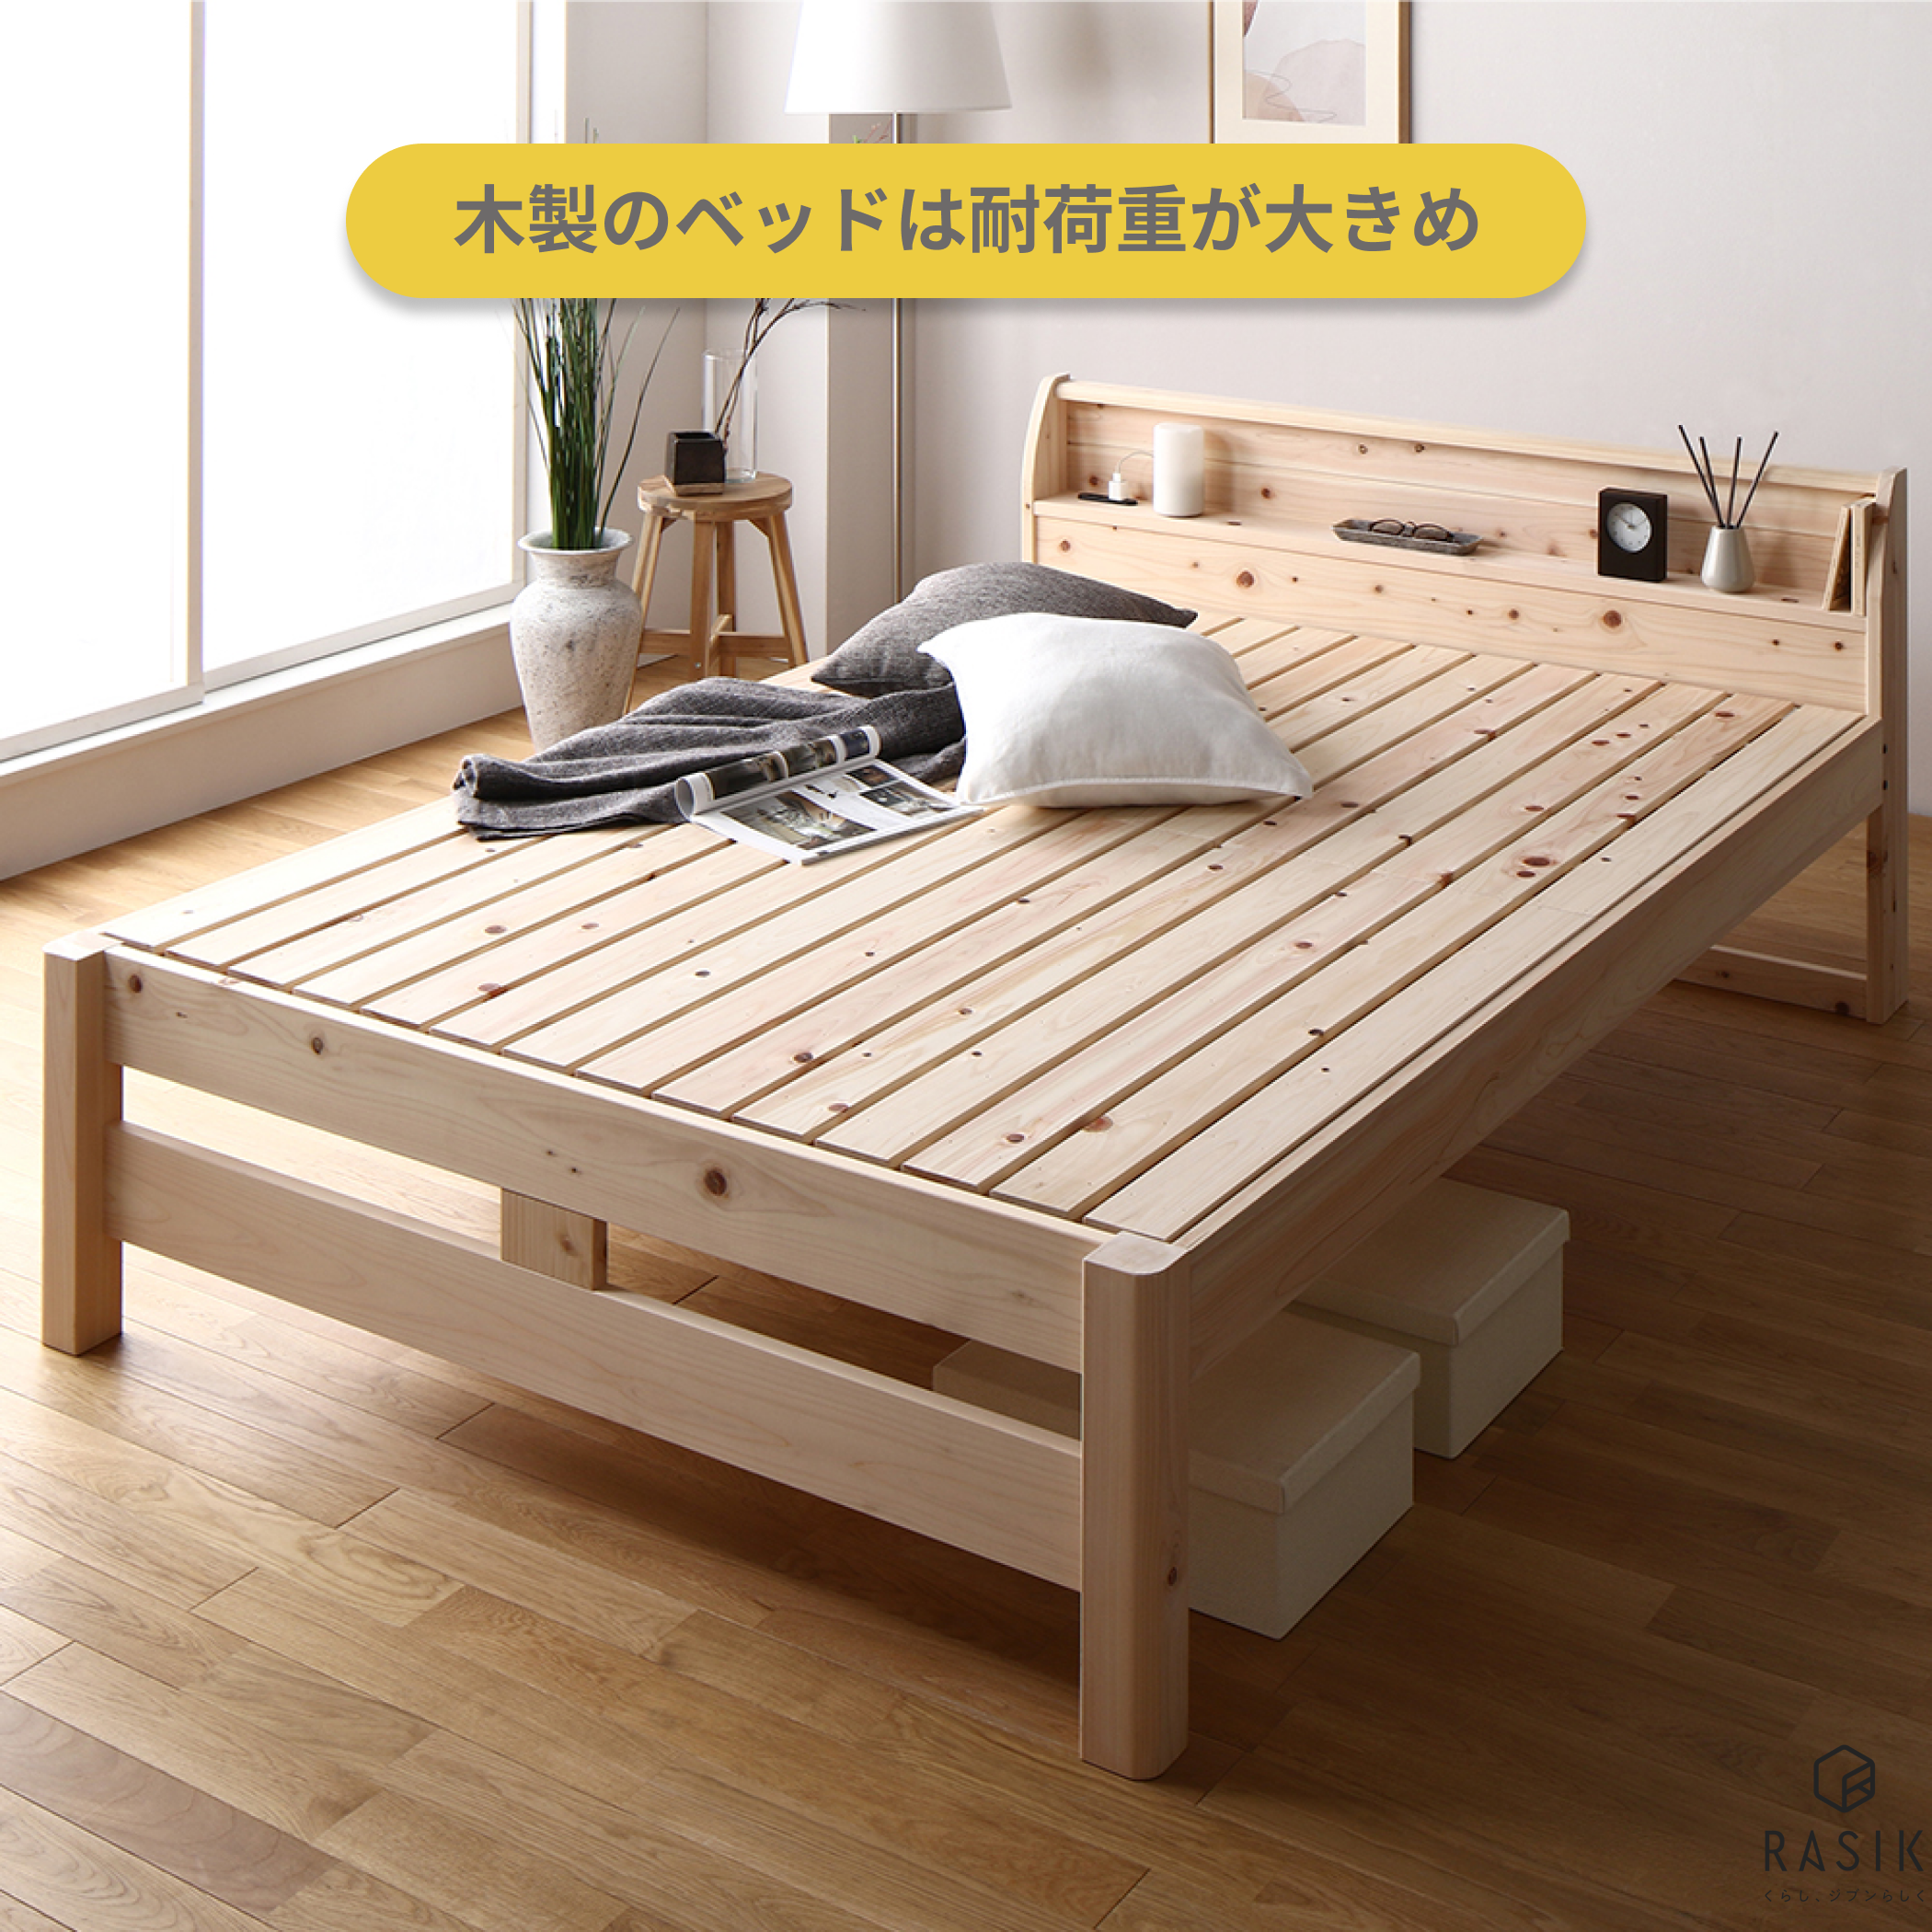 木製ベッドの画像